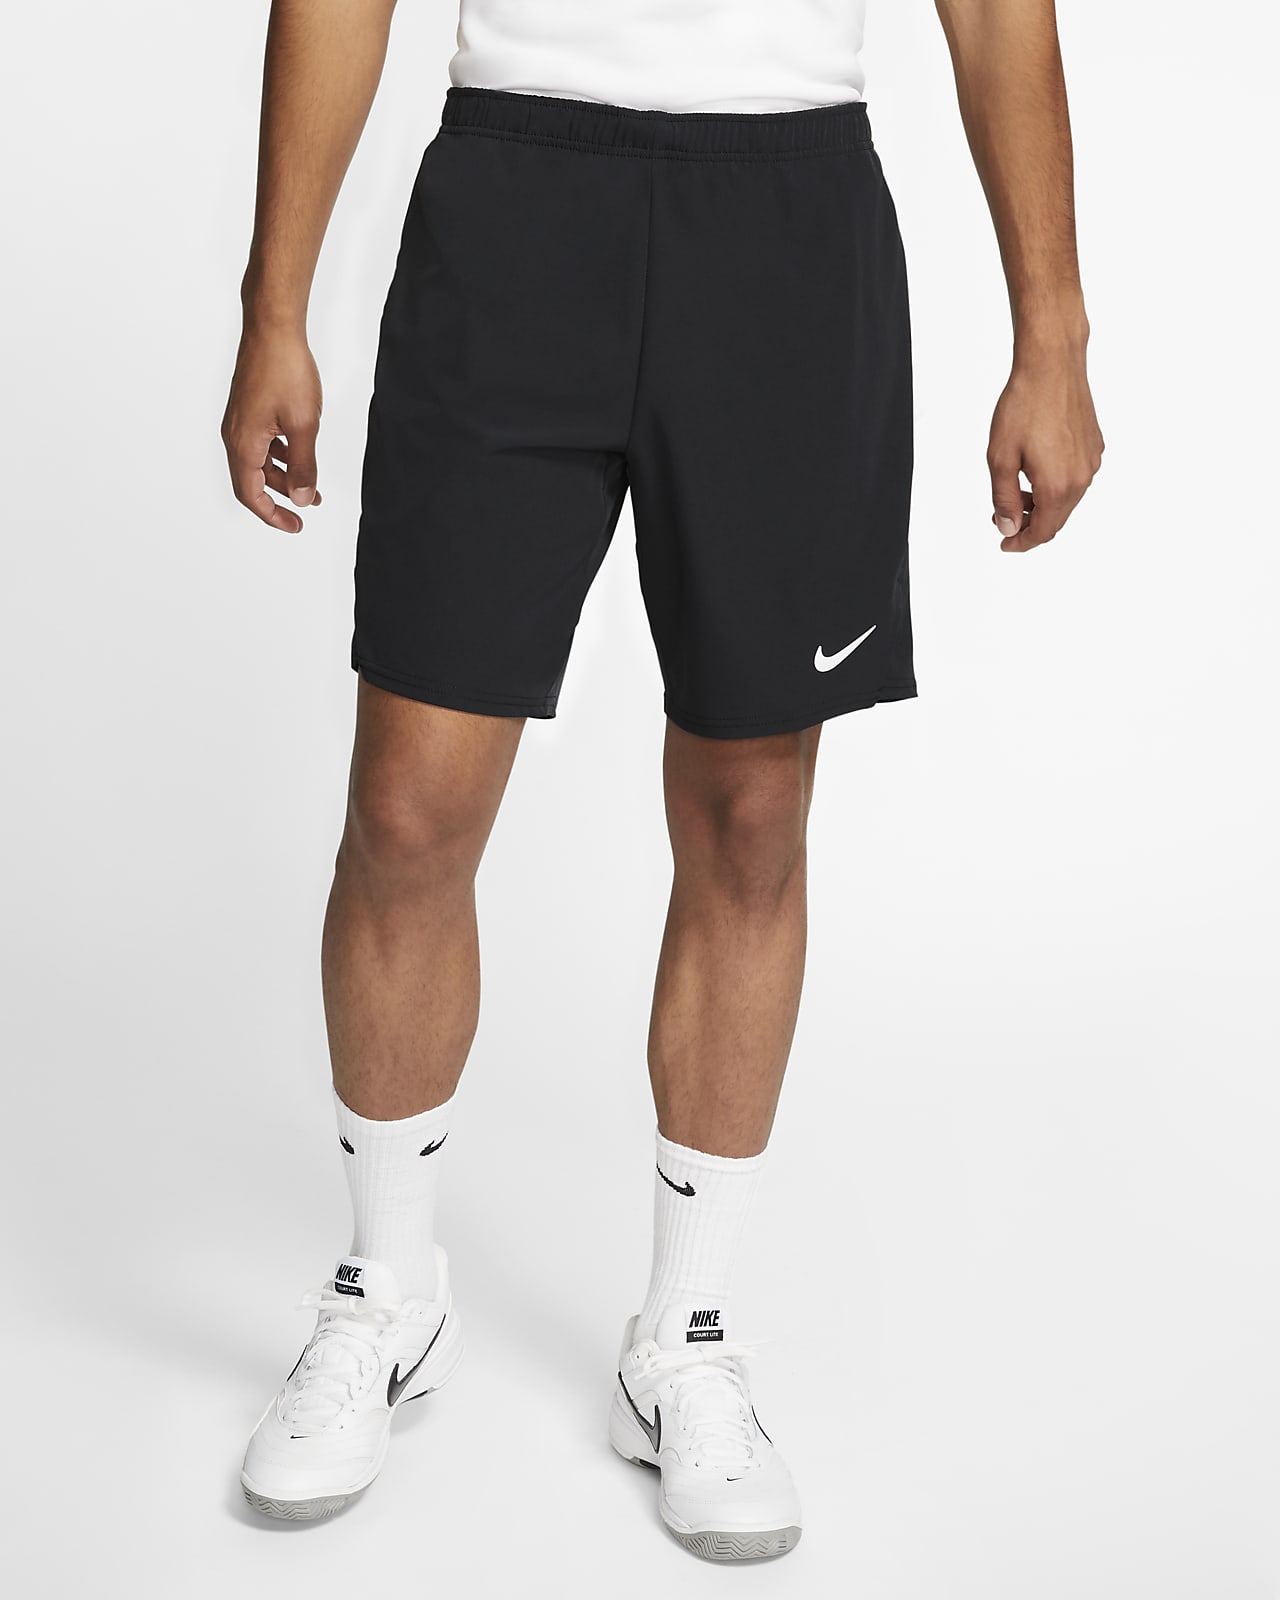 Мужские теннисные шорты NikeCourt Flex Ace. Nike RU